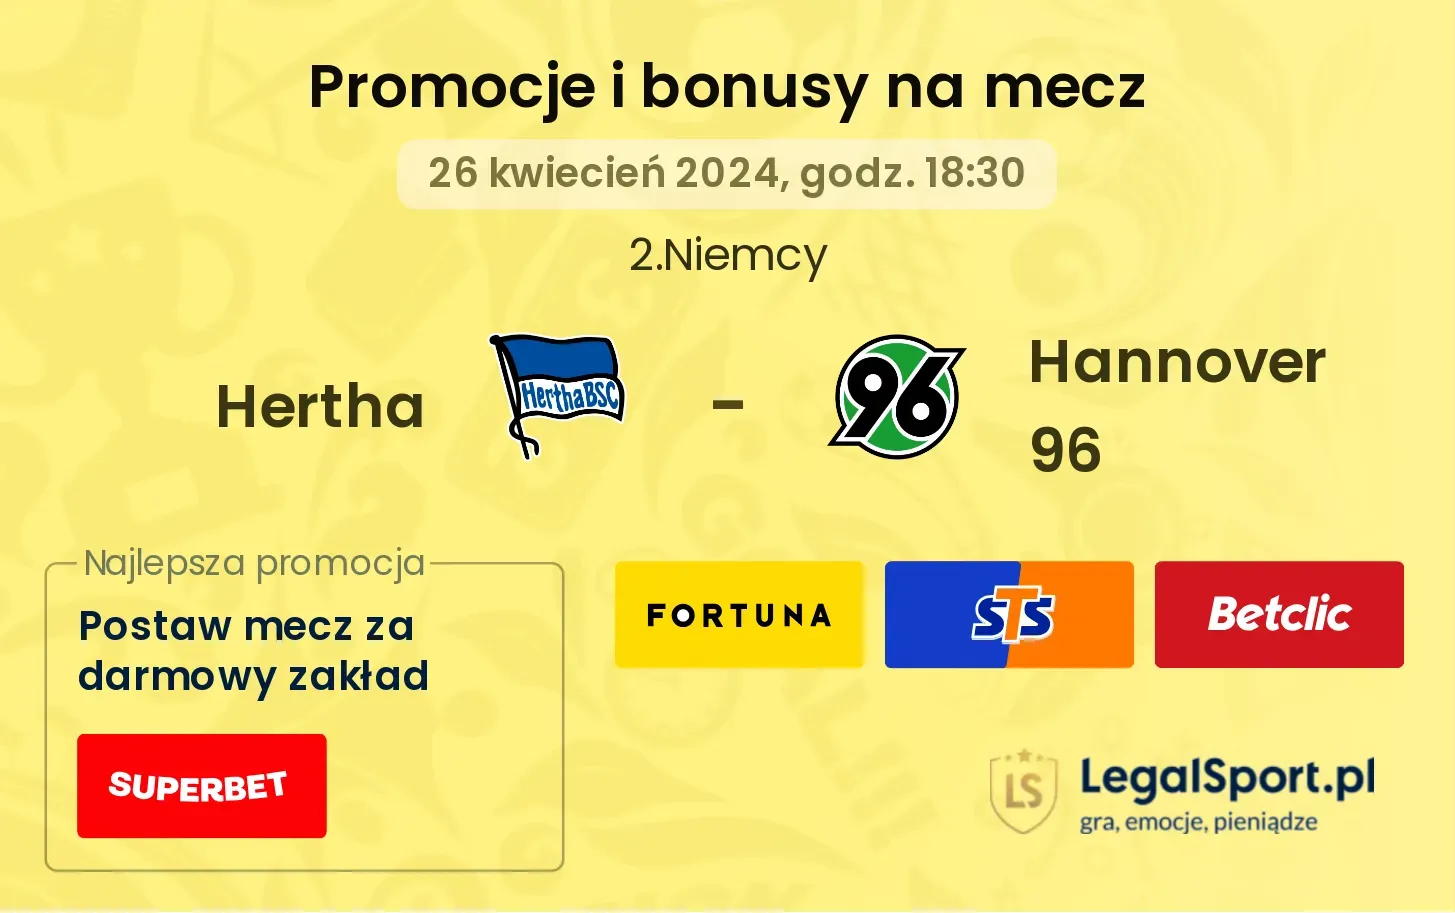 Hertha - Hannover 96 promocje bonusy na mecz